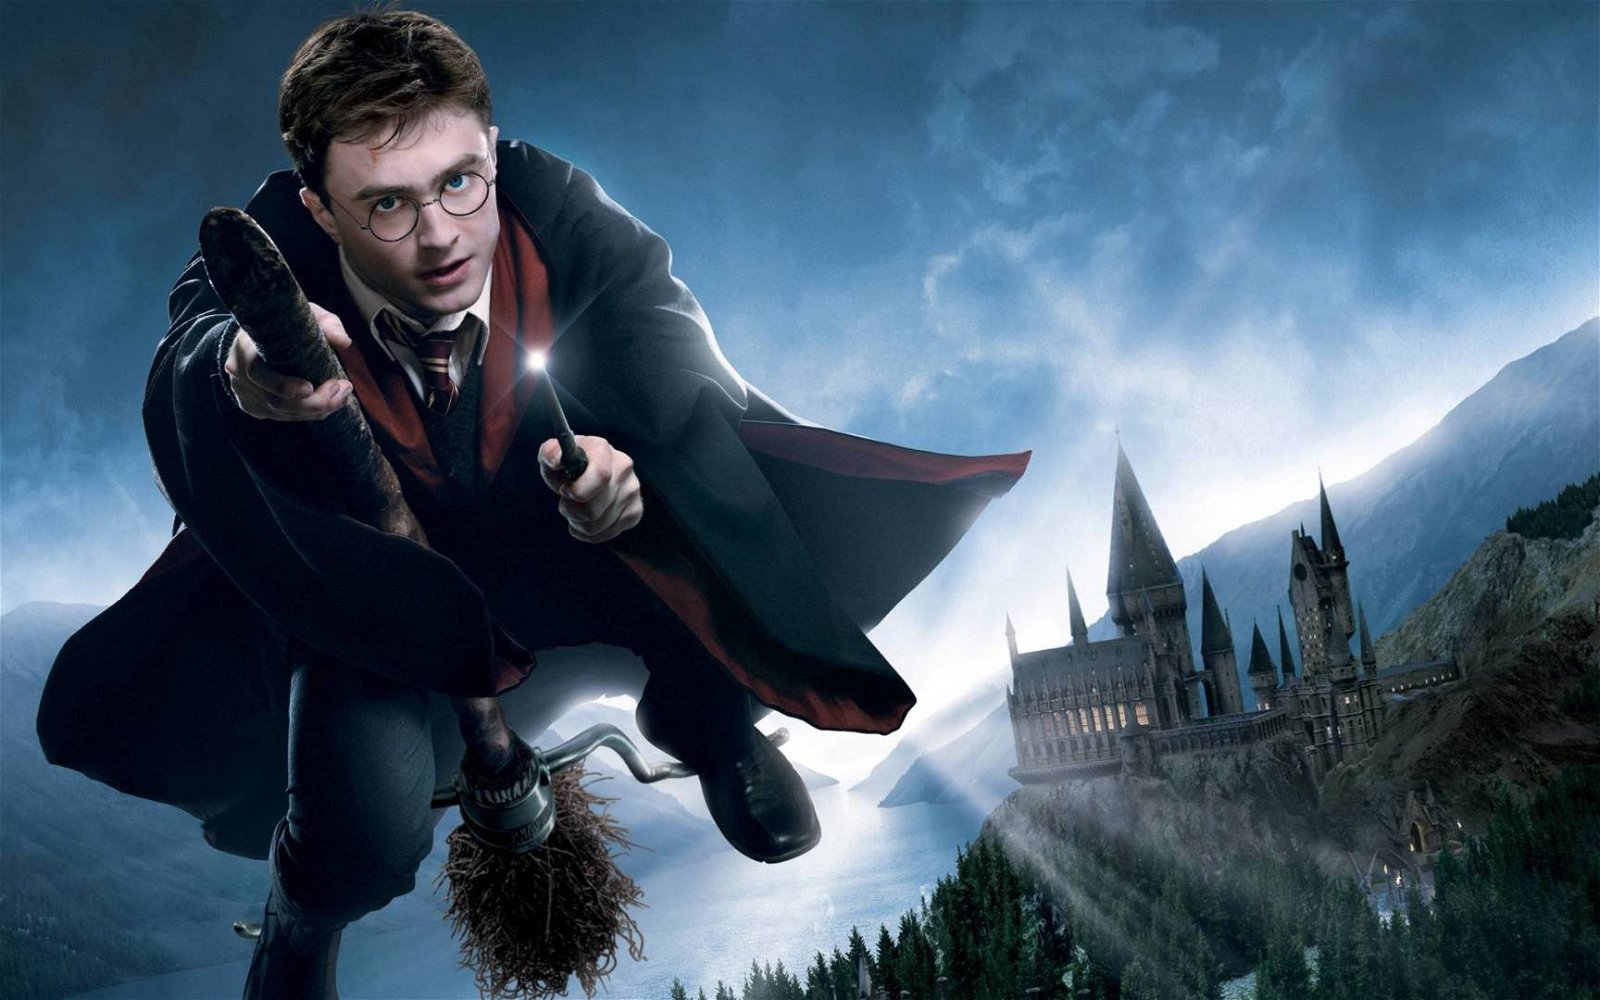 Immagine di Clementoni: arrivano i puzzle ispirati a Harry Potter